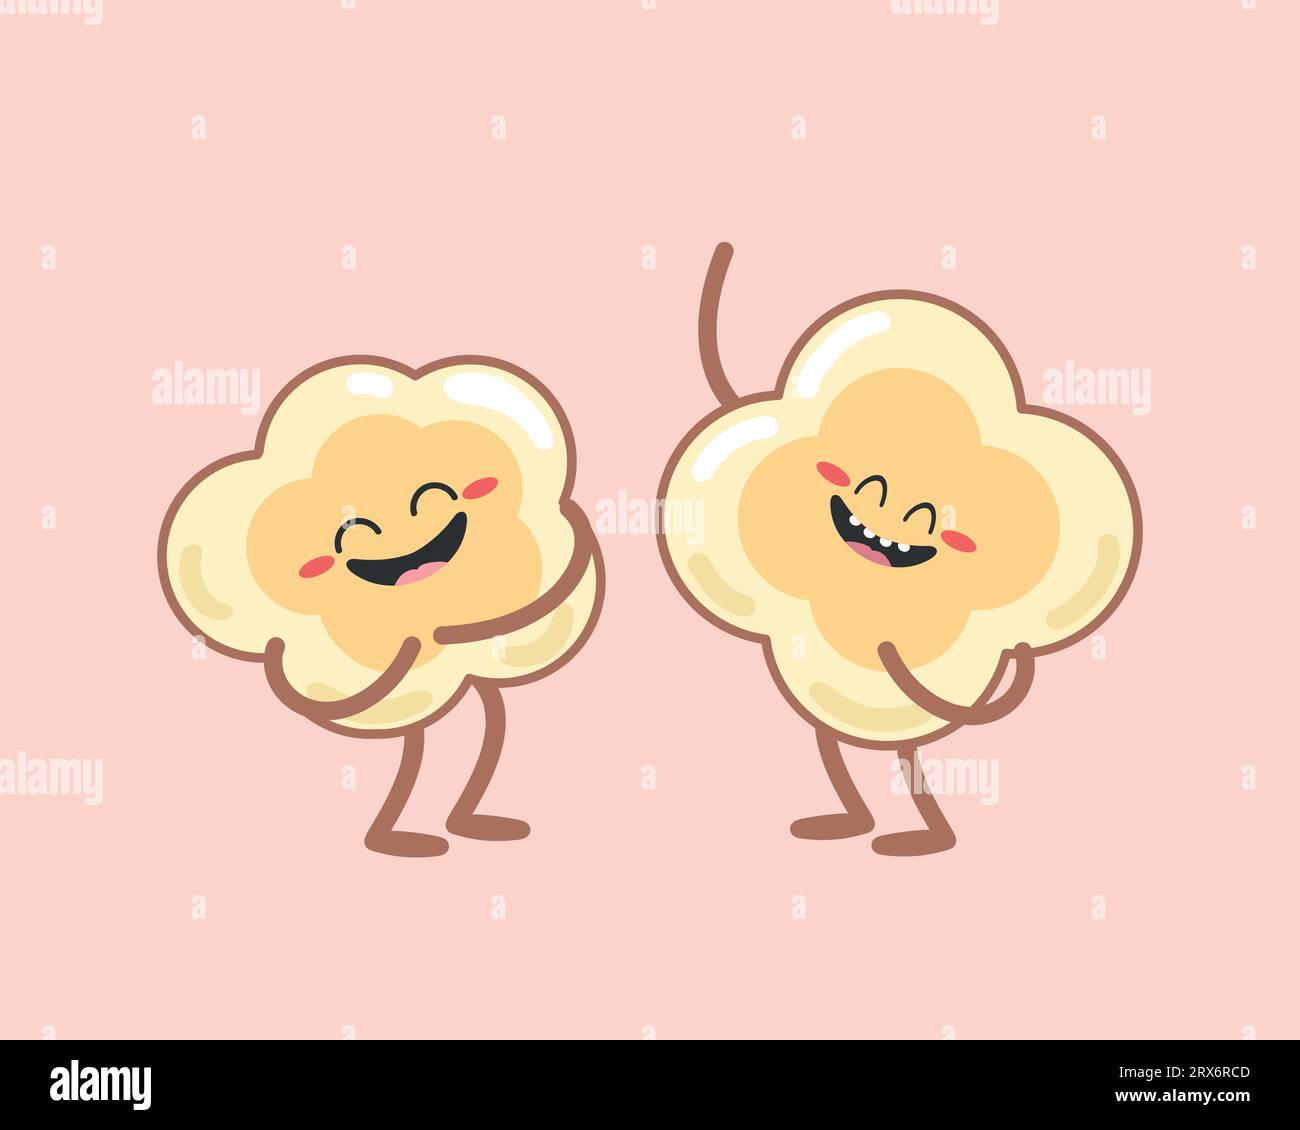 Simpatici personaggi popcorn dei cartoni animati su sfondo rosa. Due popcorn stanno ridendo. Piatto. Illustrazione vettoriale Illustrazione Vettoriale